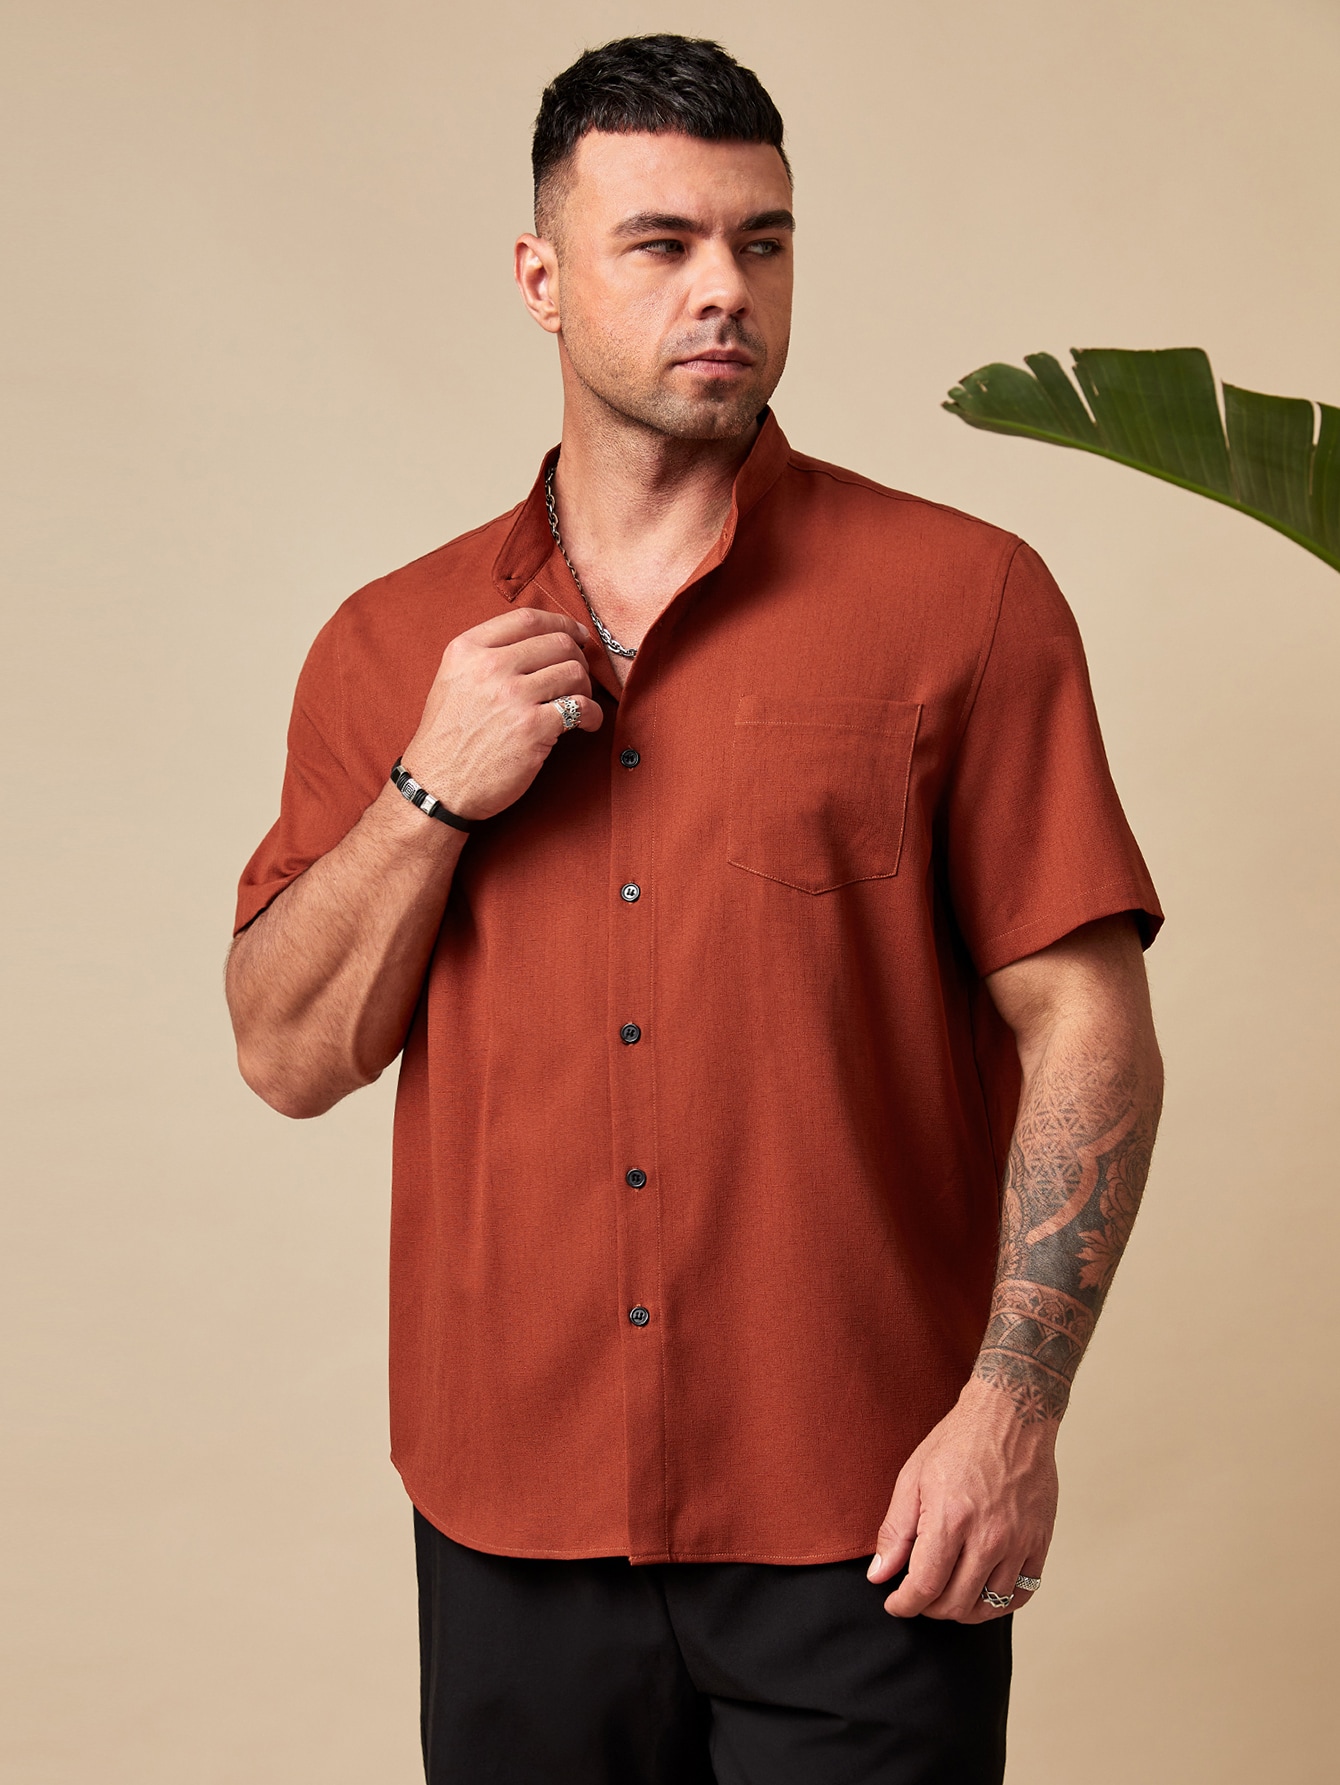 Manfinity Homme Мужская рубашка свободного кроя больших размеров на пуговицах с короткими рукавами и накладными карманами больших размеров, жженый апельсин